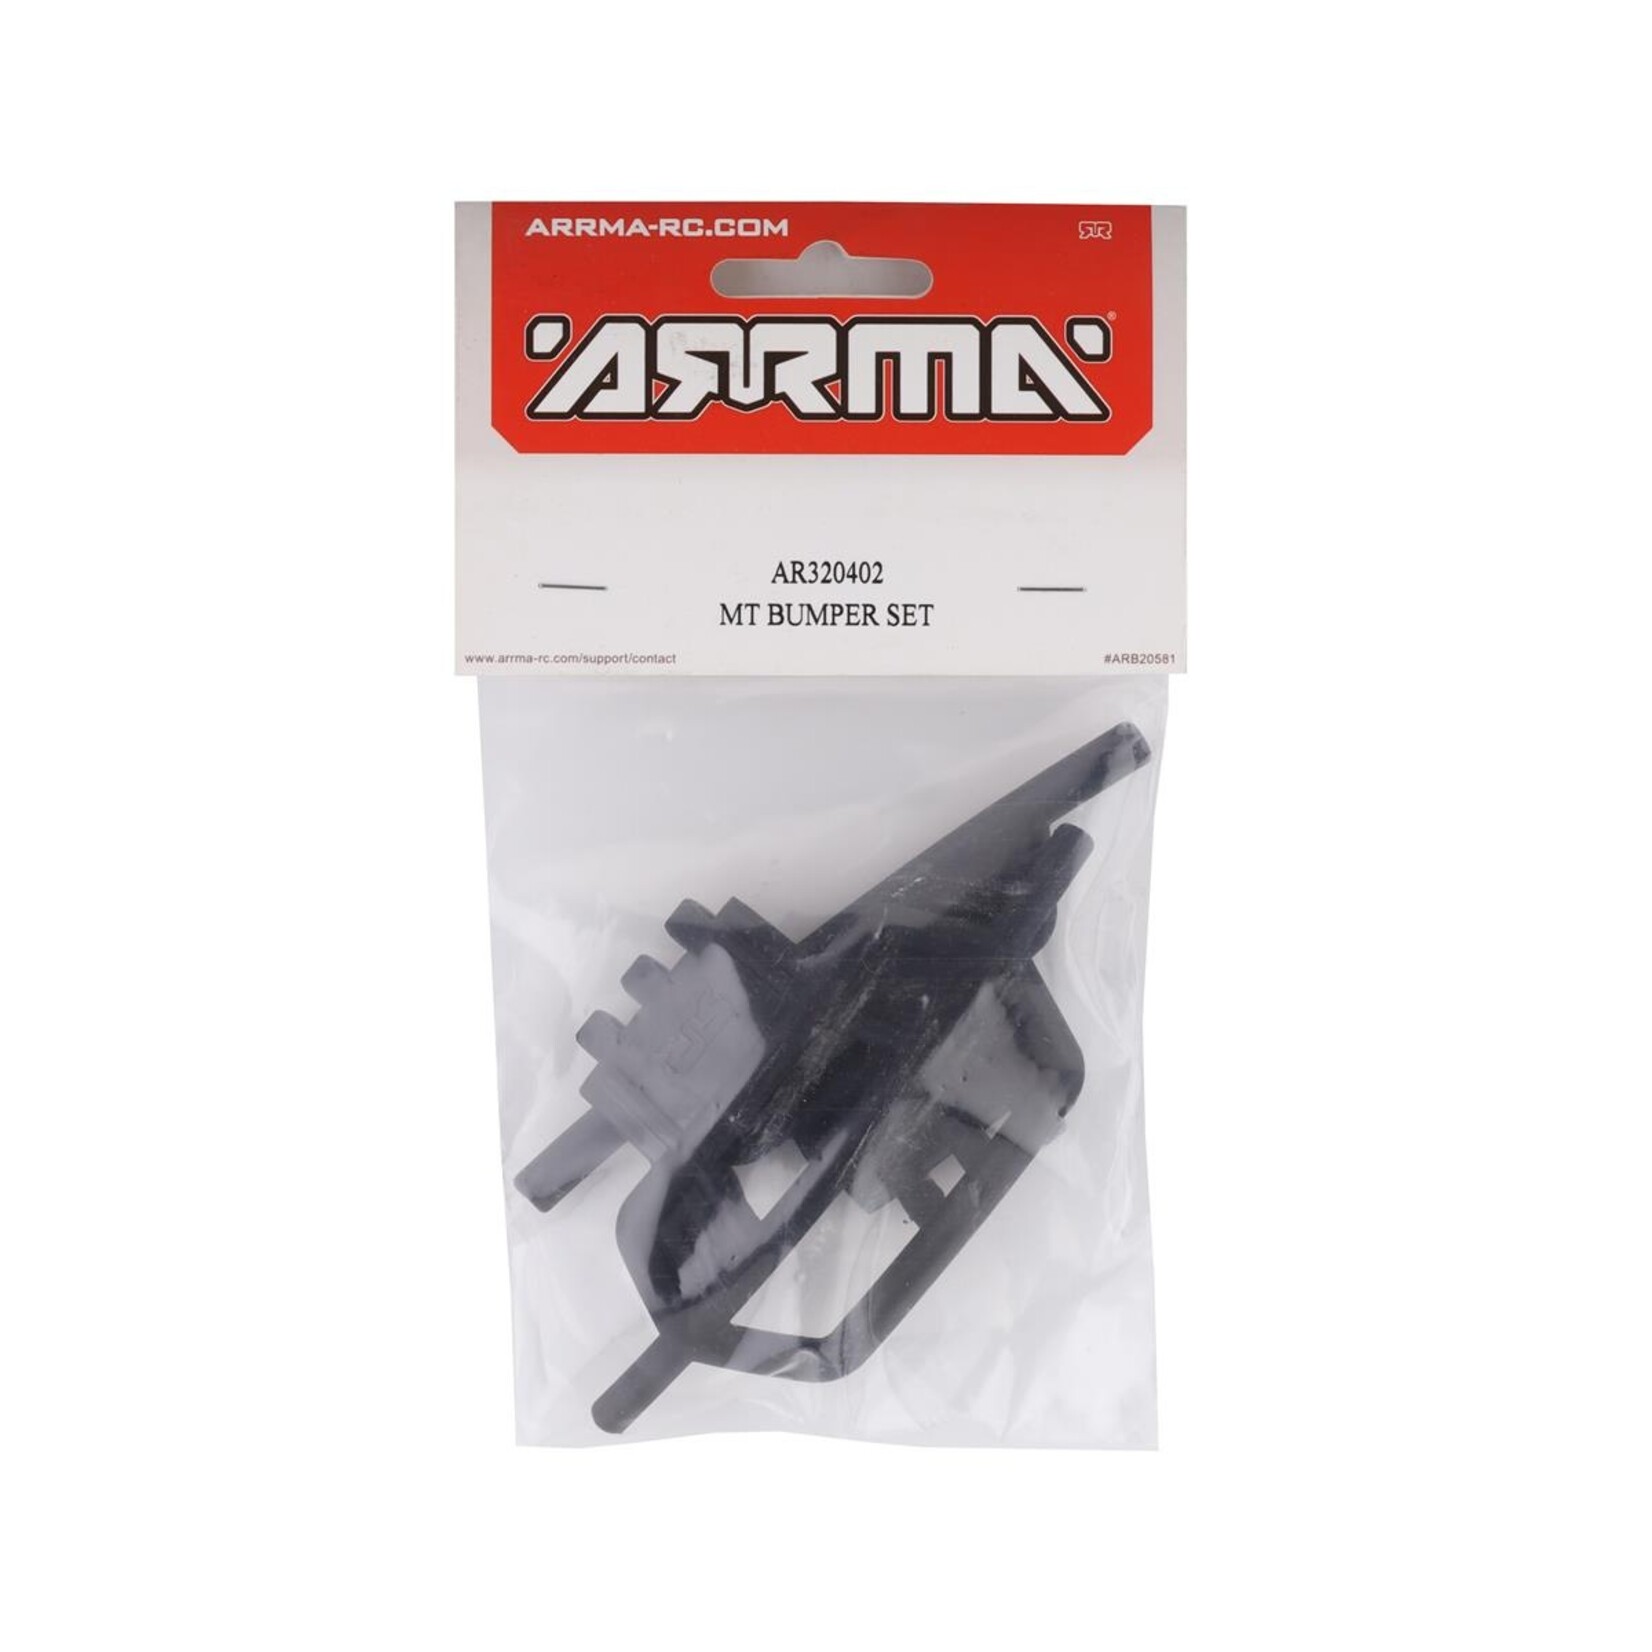 ARRMA Arrma MT Bumper Set: 4x4 Granite Mega #AR320402